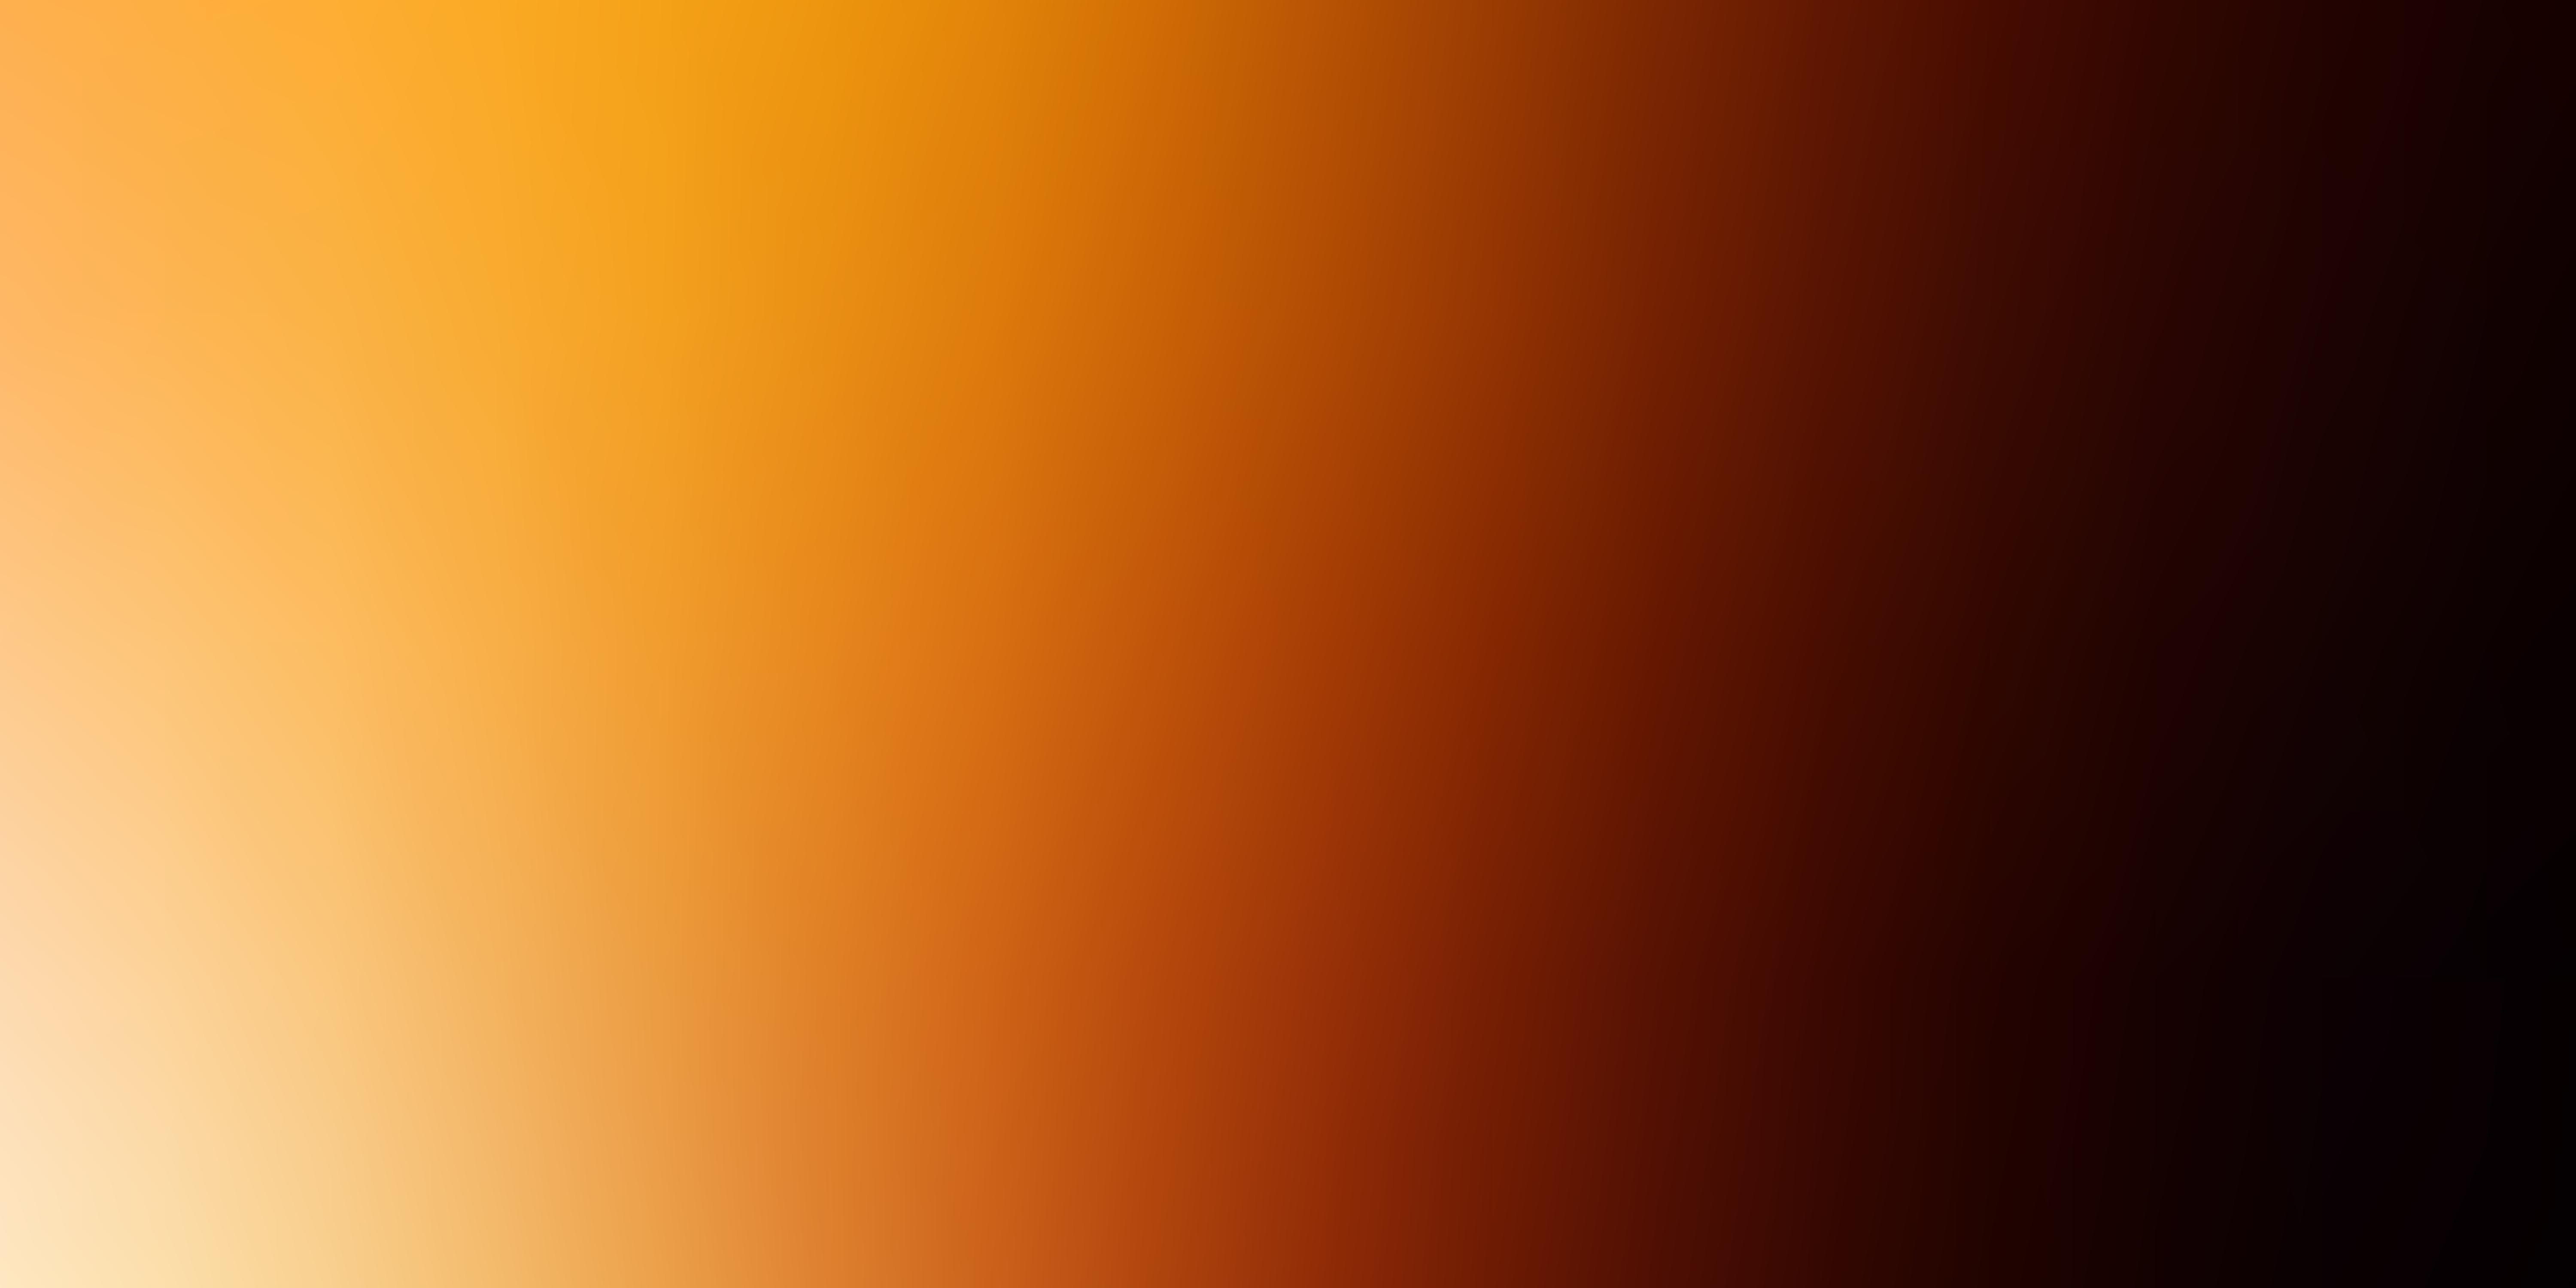 Vector màu cam đậm với hiệu ứng mờ thông minh: Nếu bạn đang tìm kiếm một bức ảnh thực sự độc đáo và sáng tạo, thì bộ vector màu cam đậm với hiệu ứng mờ thông minh này là lựa chọn hoàn hảo. Sự kết hợp giữa màu sắc và hiệu ứng đem lại điều đặc biệt cho bức ảnh này.